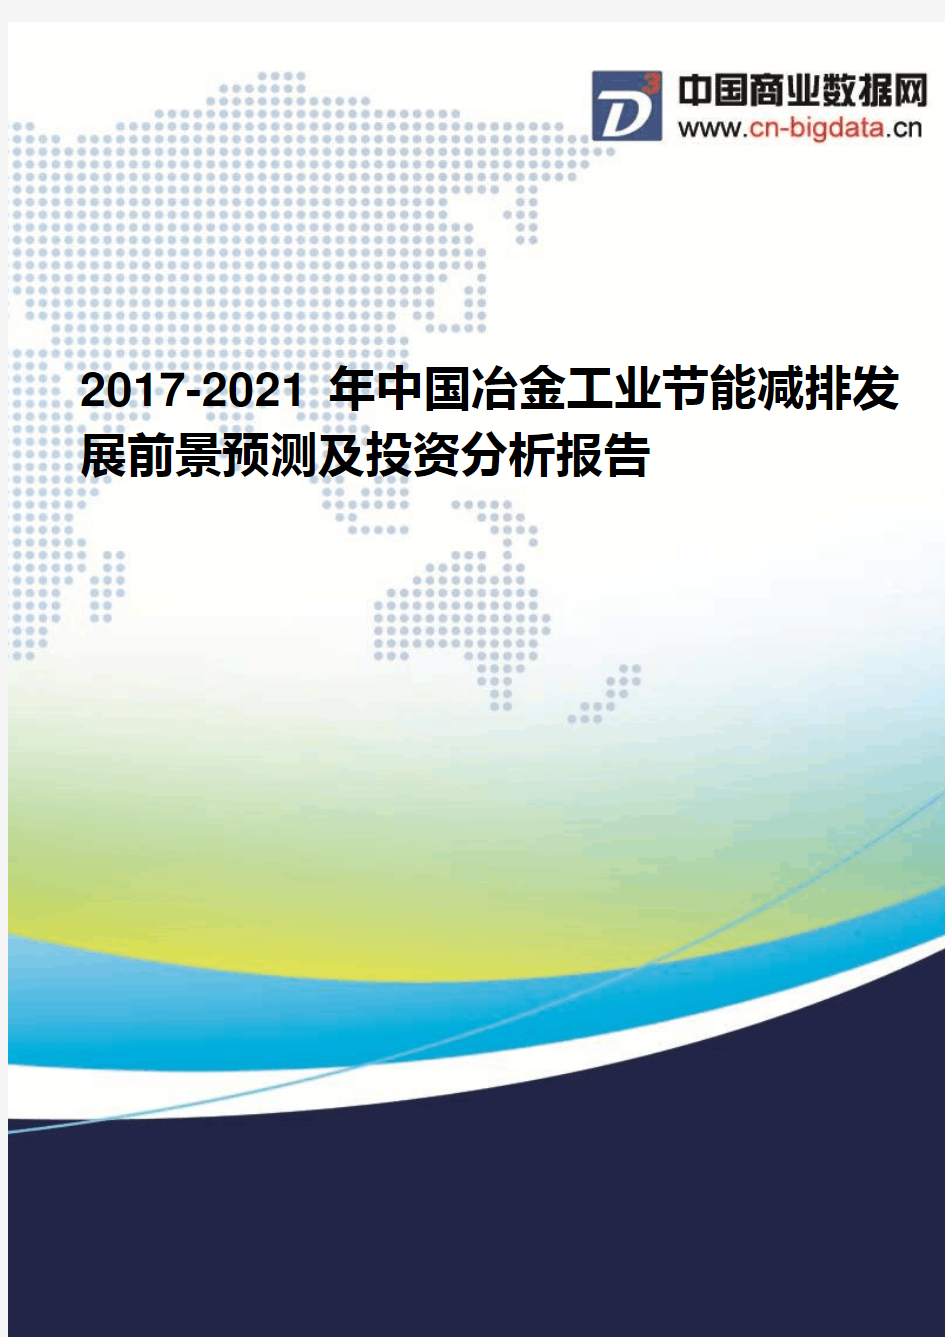 2017-2021年中国冶金工业节能减排发展前景预测及投资分析报告(2017版目录)